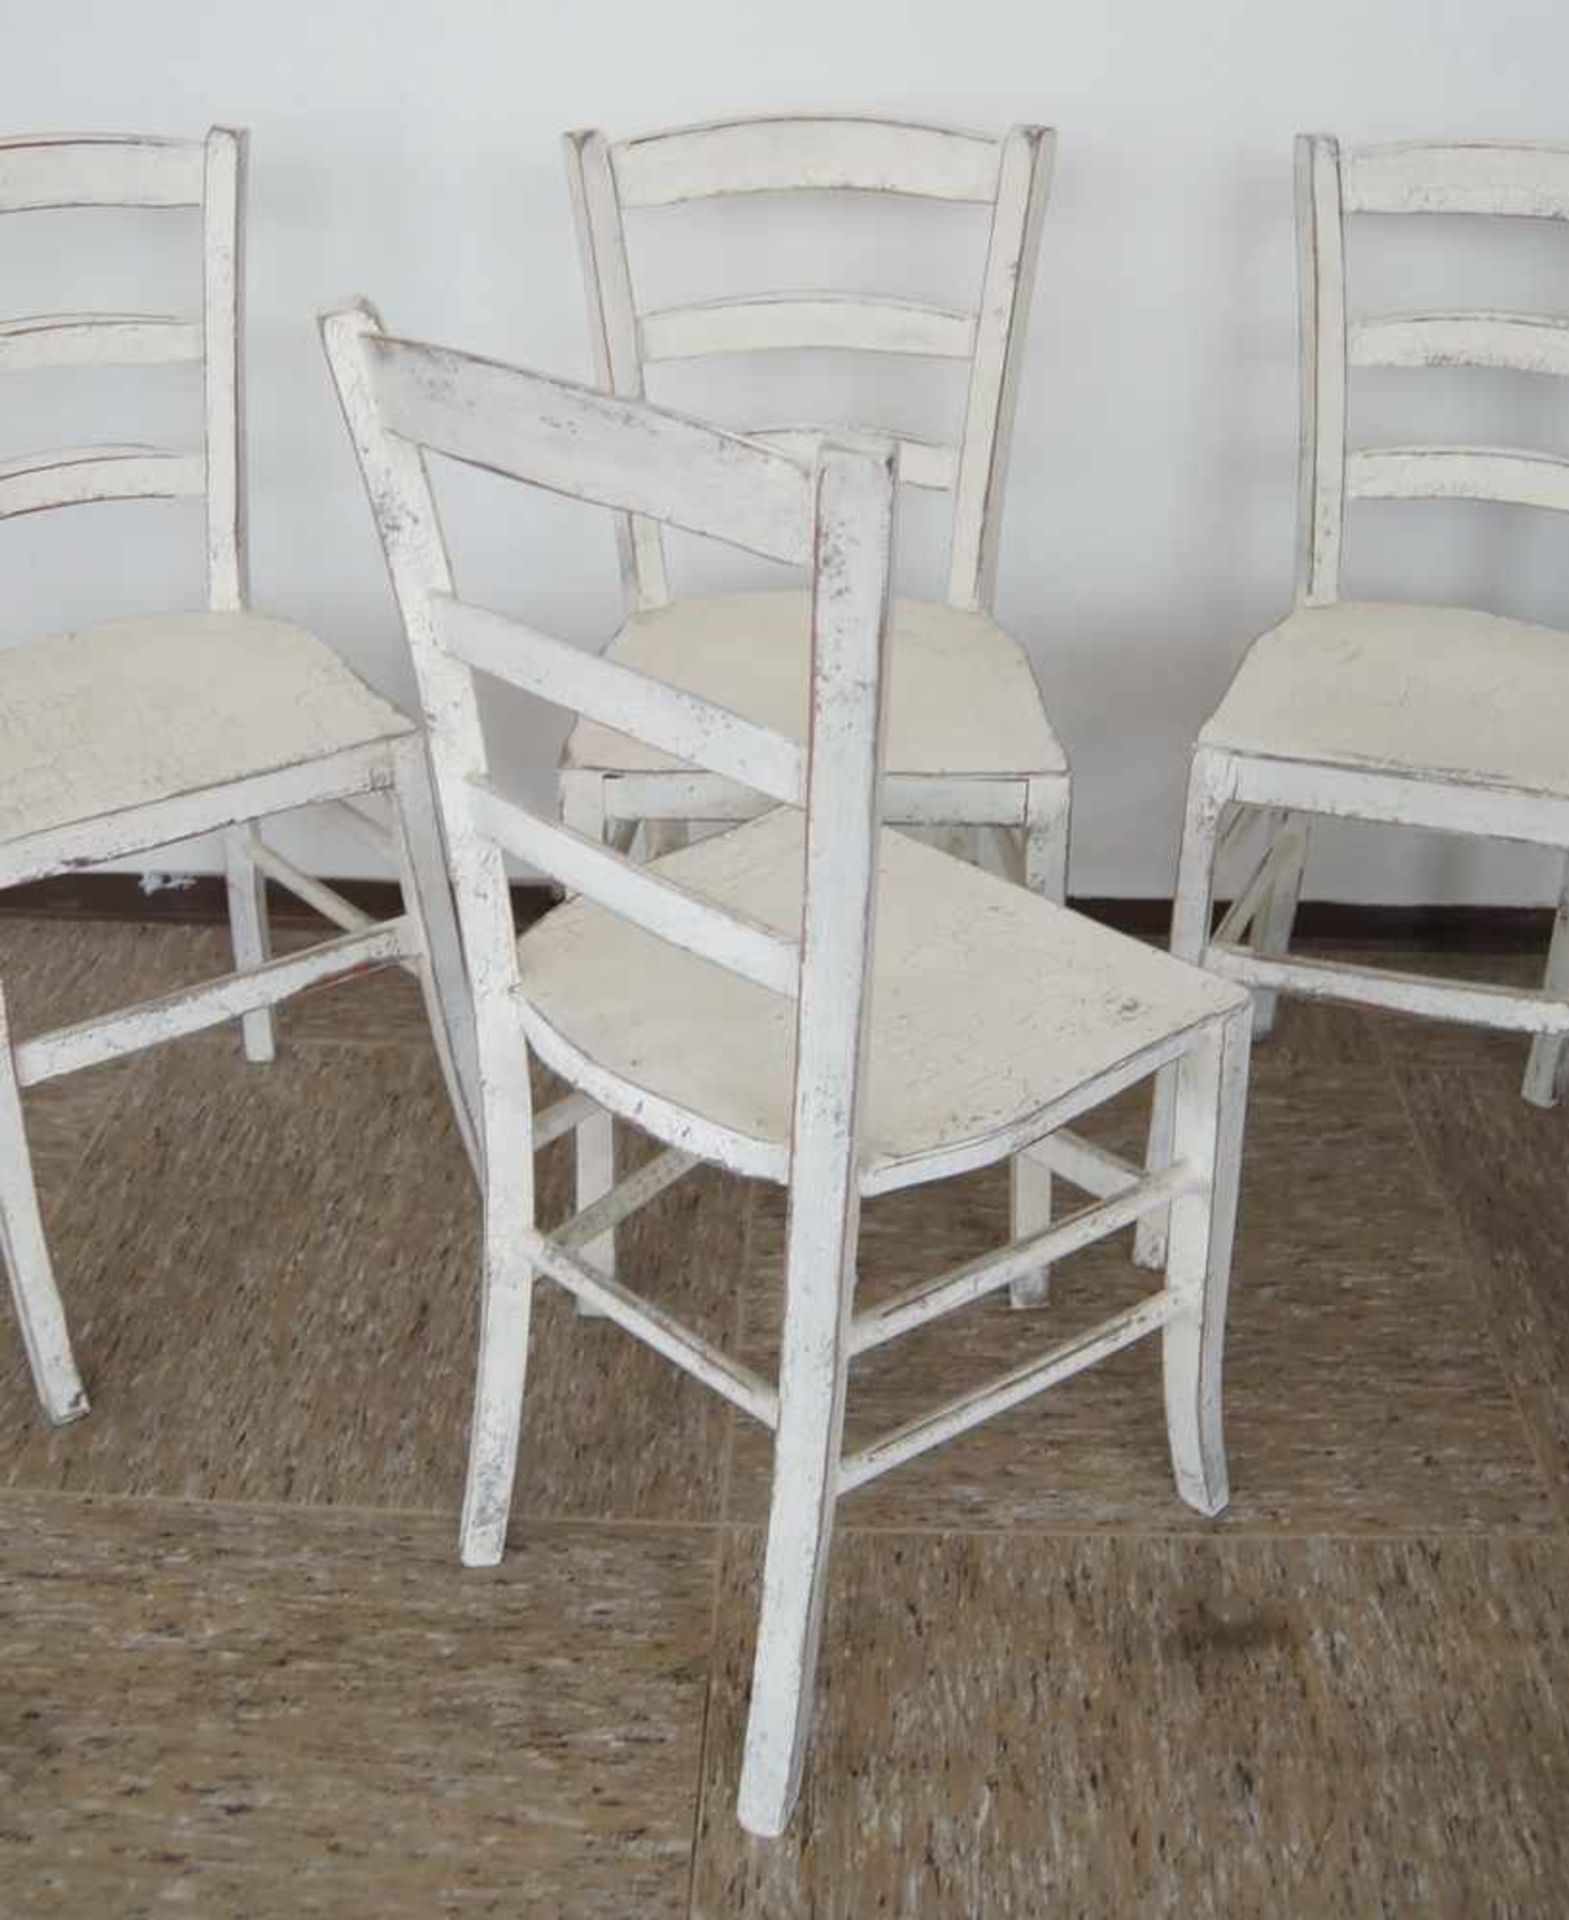 Vier Jugendstil Stühle, Weichholz, weiss gefasst, um 1900, 87x37x35xSH 47 cm- - -24.00 % buyer's - Bild 5 aus 5